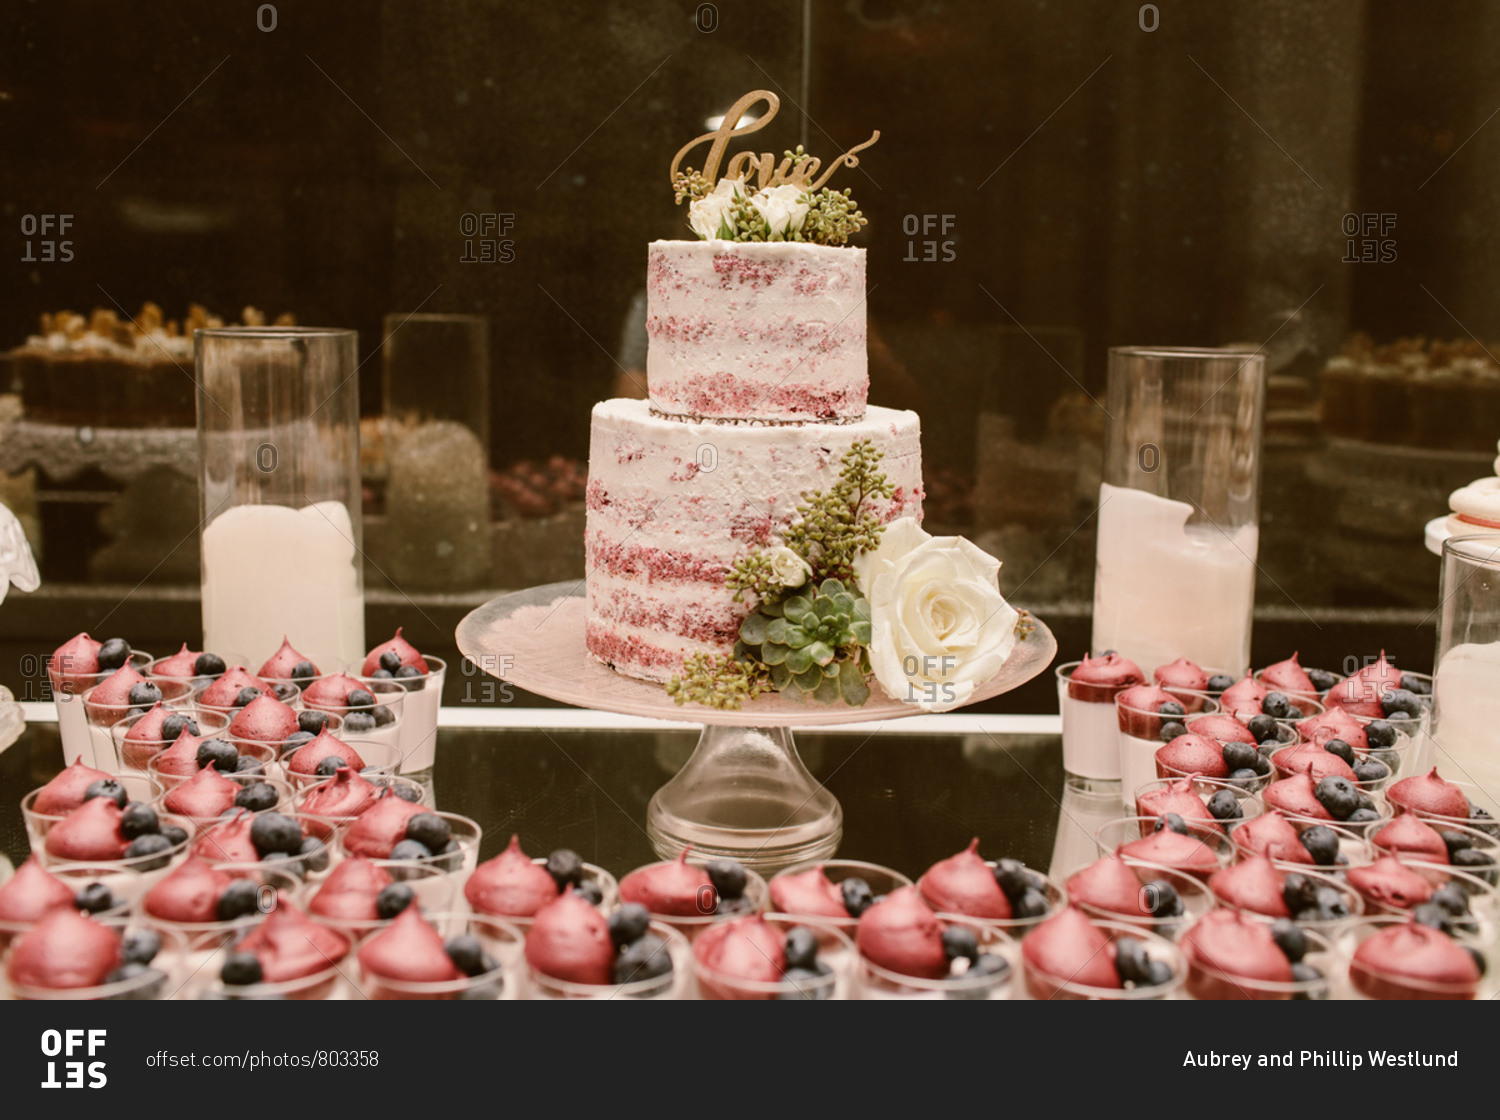 Luxury wedding dessert table with red velvet cake